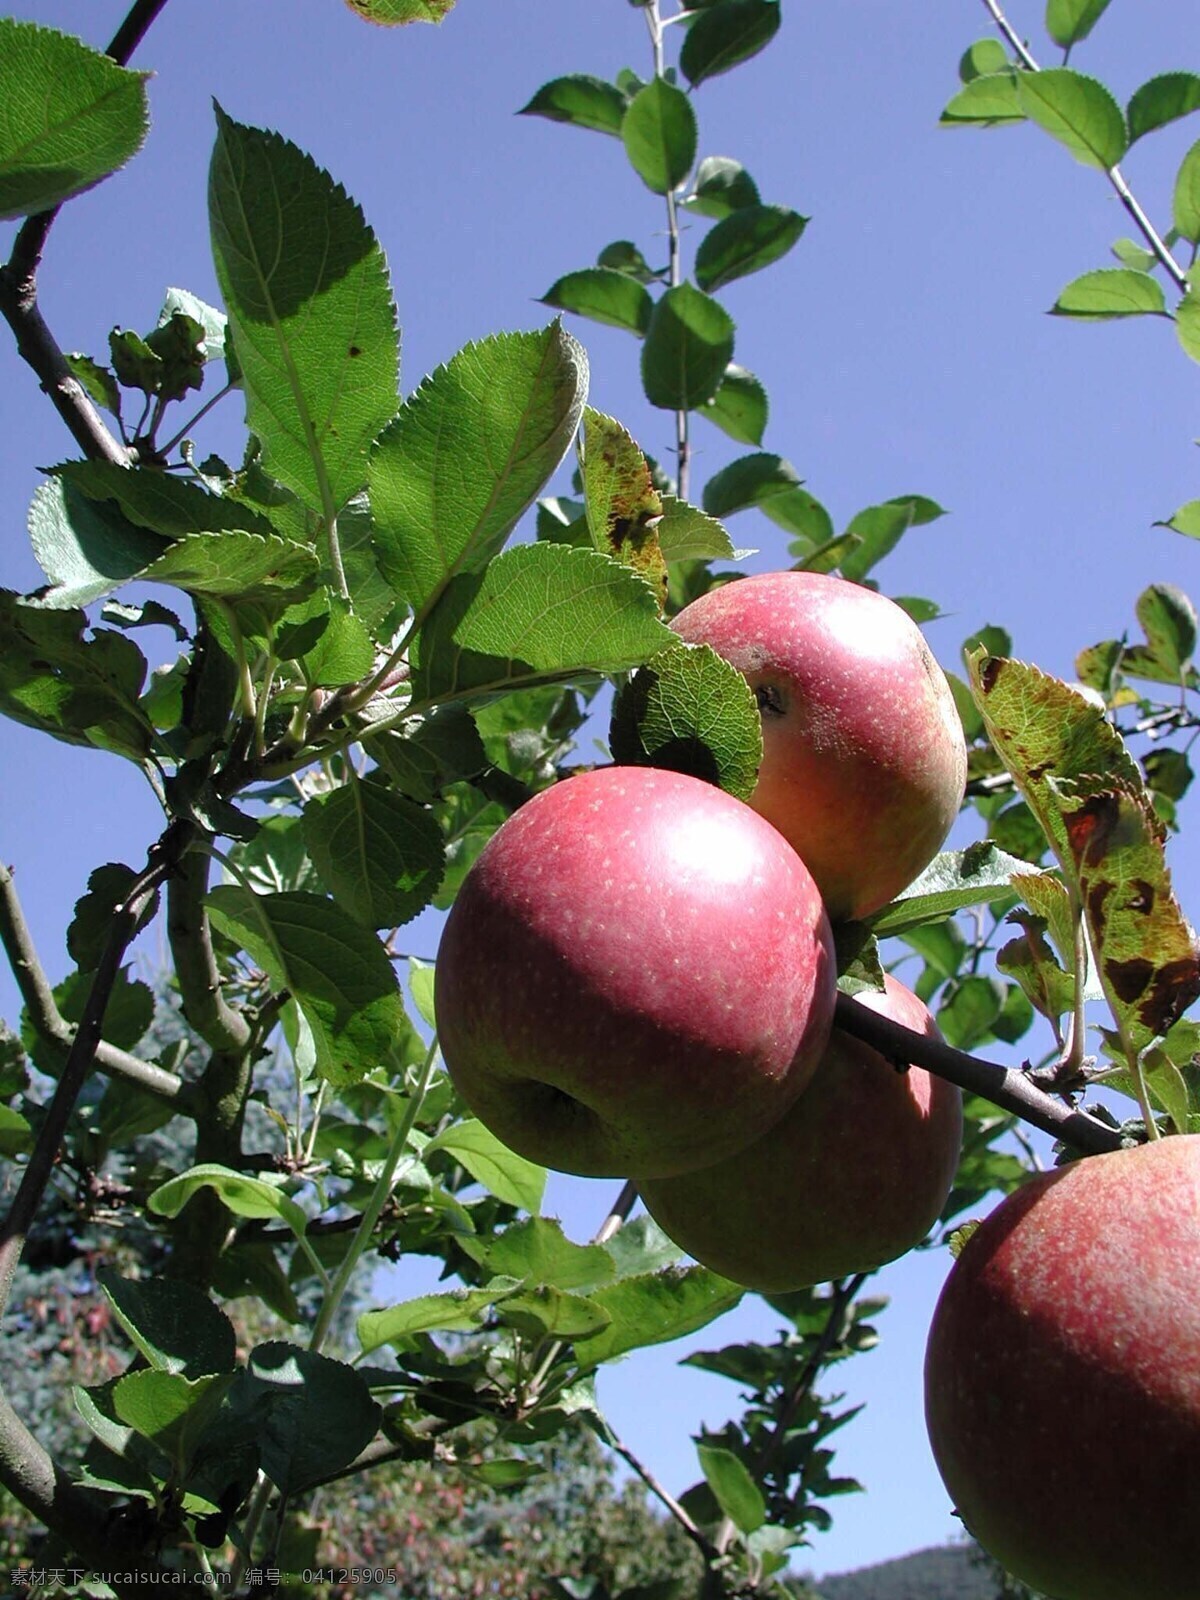 苹果 粉苹果 苹果照片 苹果照片素材 散落的苹果 新鲜苹果 水果 新鲜水果 小苹果 苹果树 苹果数字 红苹果 树叶 生物世界